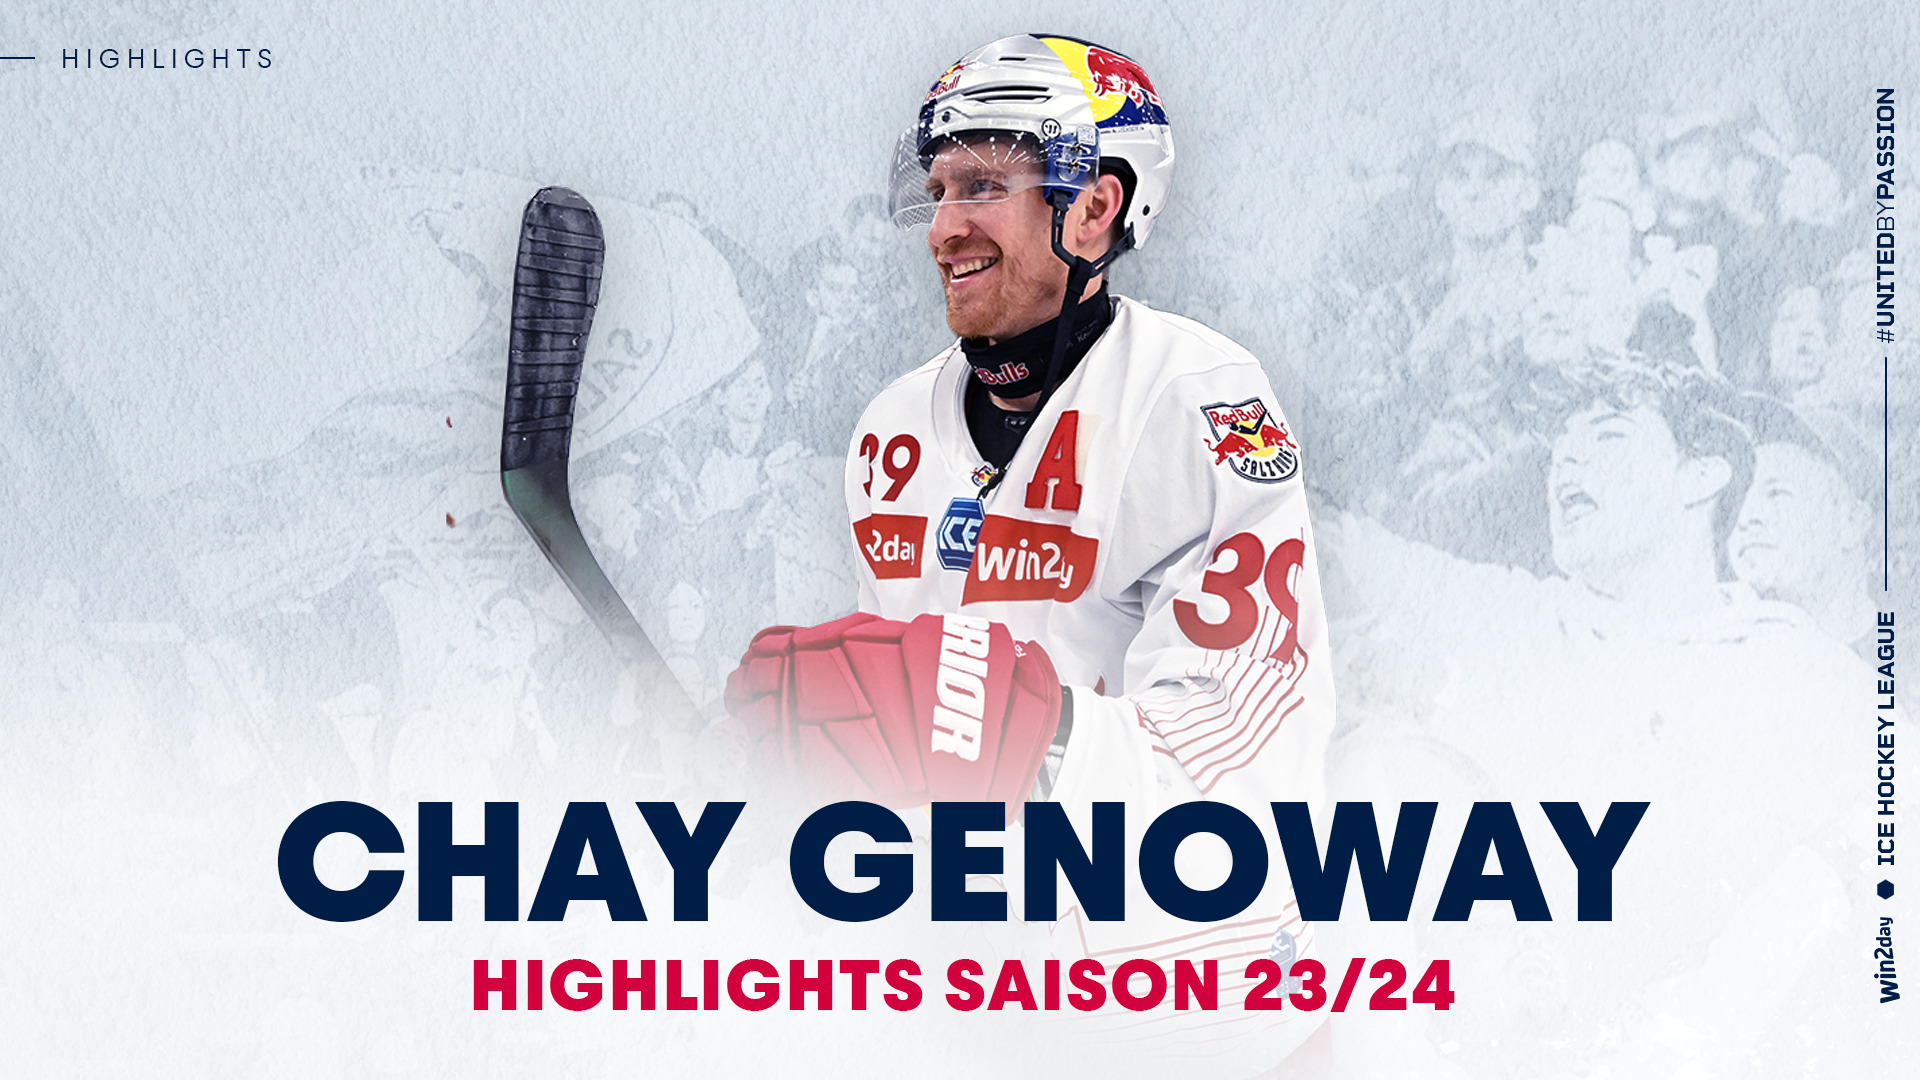 Chay Genoway: Die Highlights aus der Saison 23/24